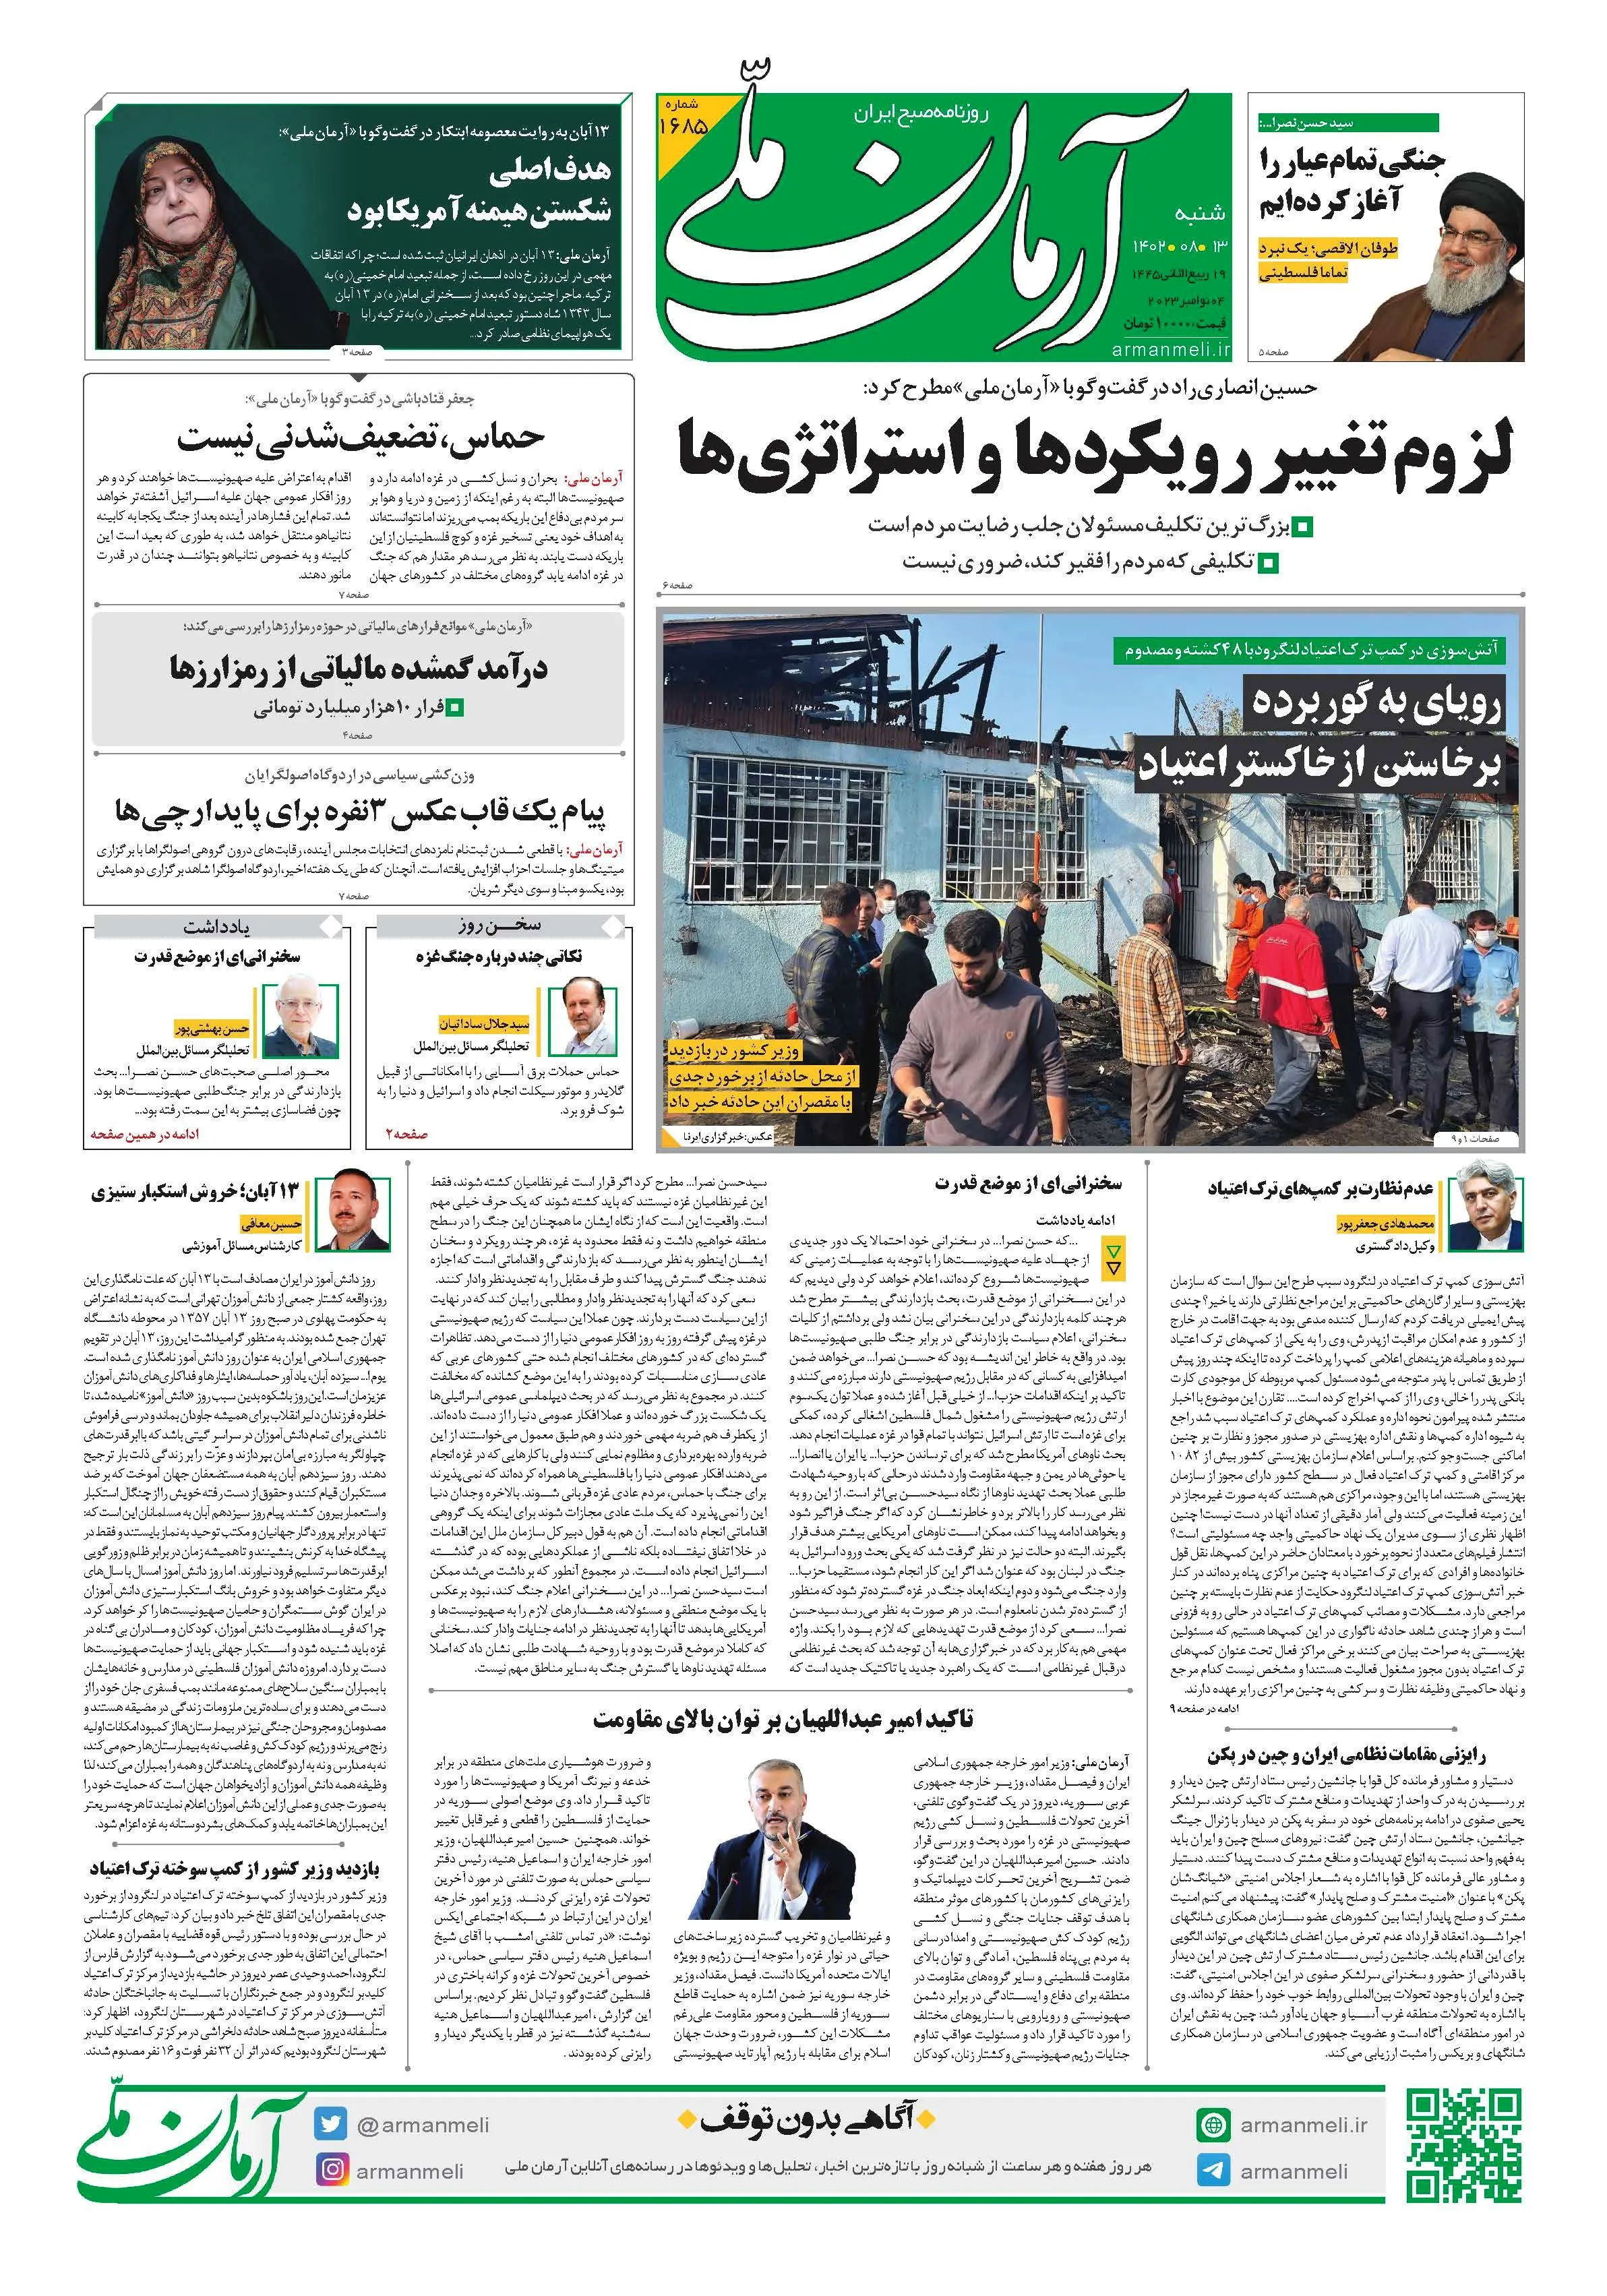 روزنامه آرمان ملی - شنبه 13 آبان - شماره 1654